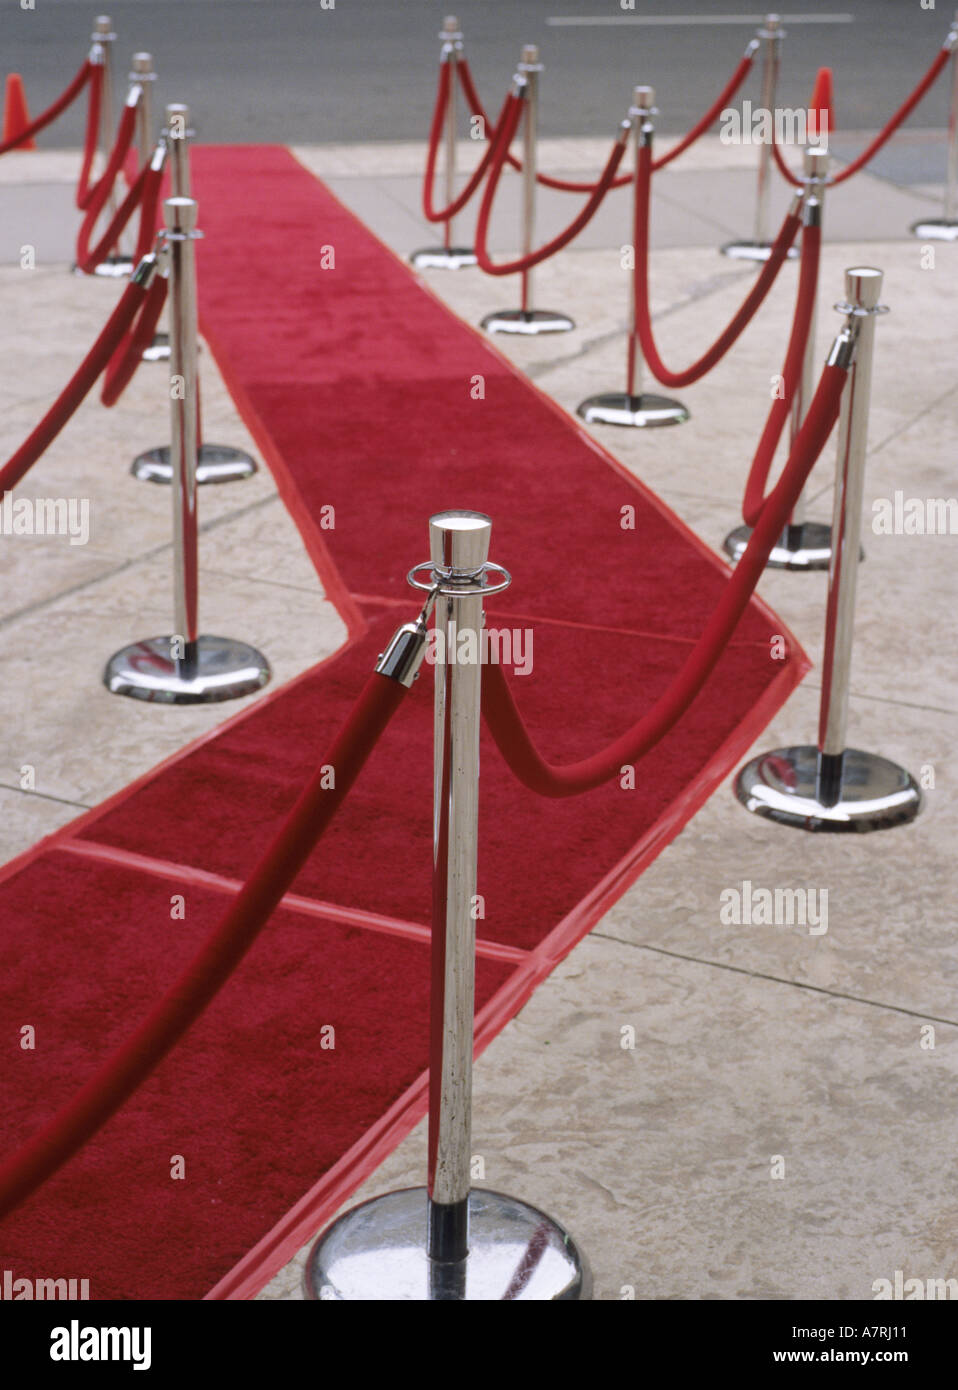 Velvet ropes and red carpet on sidewalk for awards ceremony Stock Photo